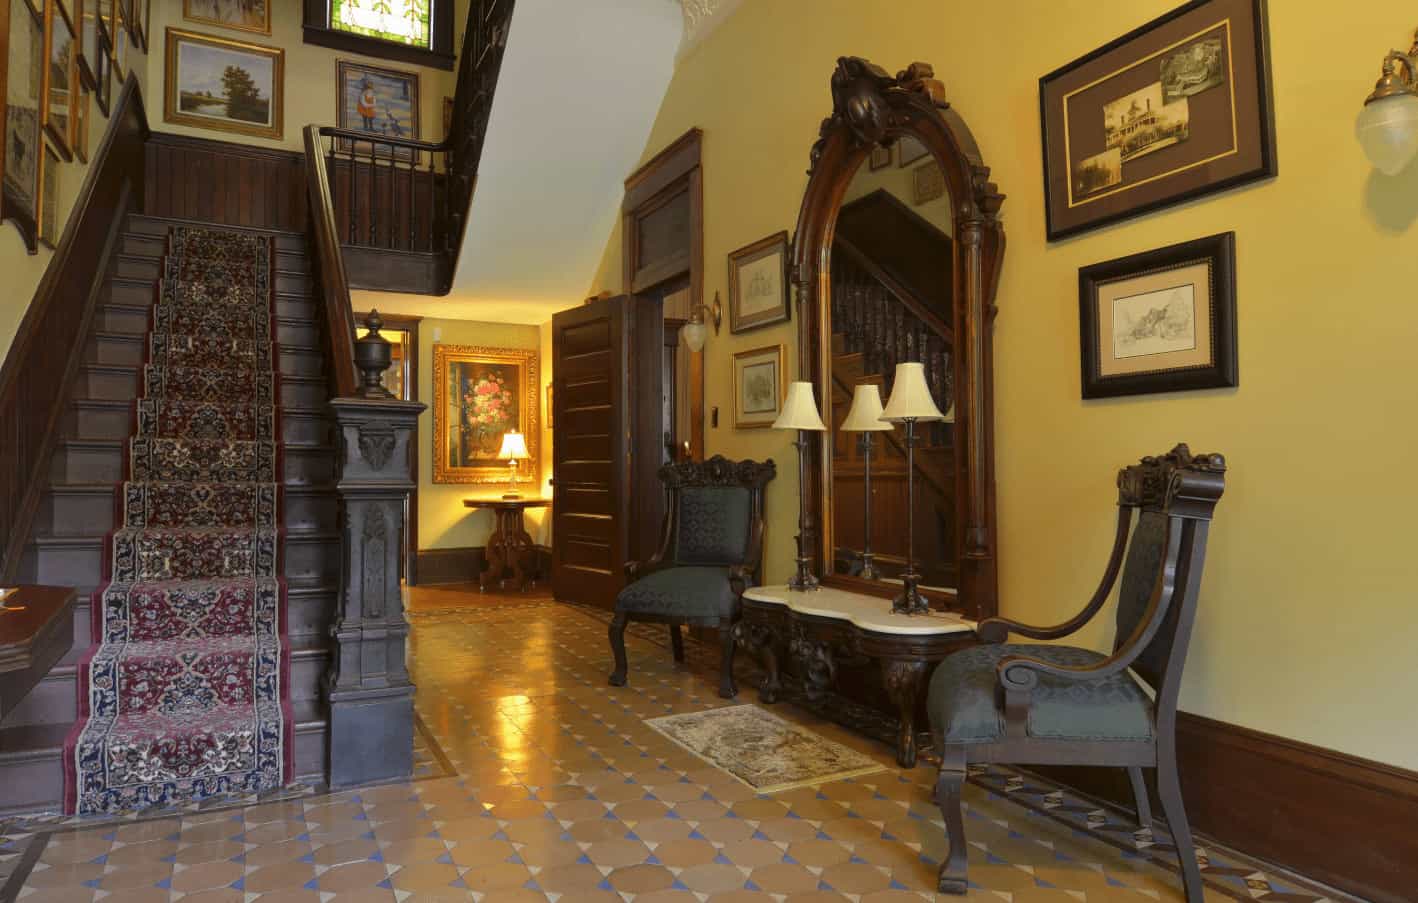 维多利亚式门厅拥有一个雕刻的木头控制台桌子，配以一面巨大的镜子和深色的木头扶手椅。它有黄色的墙壁，上面挂满了裱框的墙壁艺术作品，还有一个木制楼梯，上面放着一个老式的跑步机。